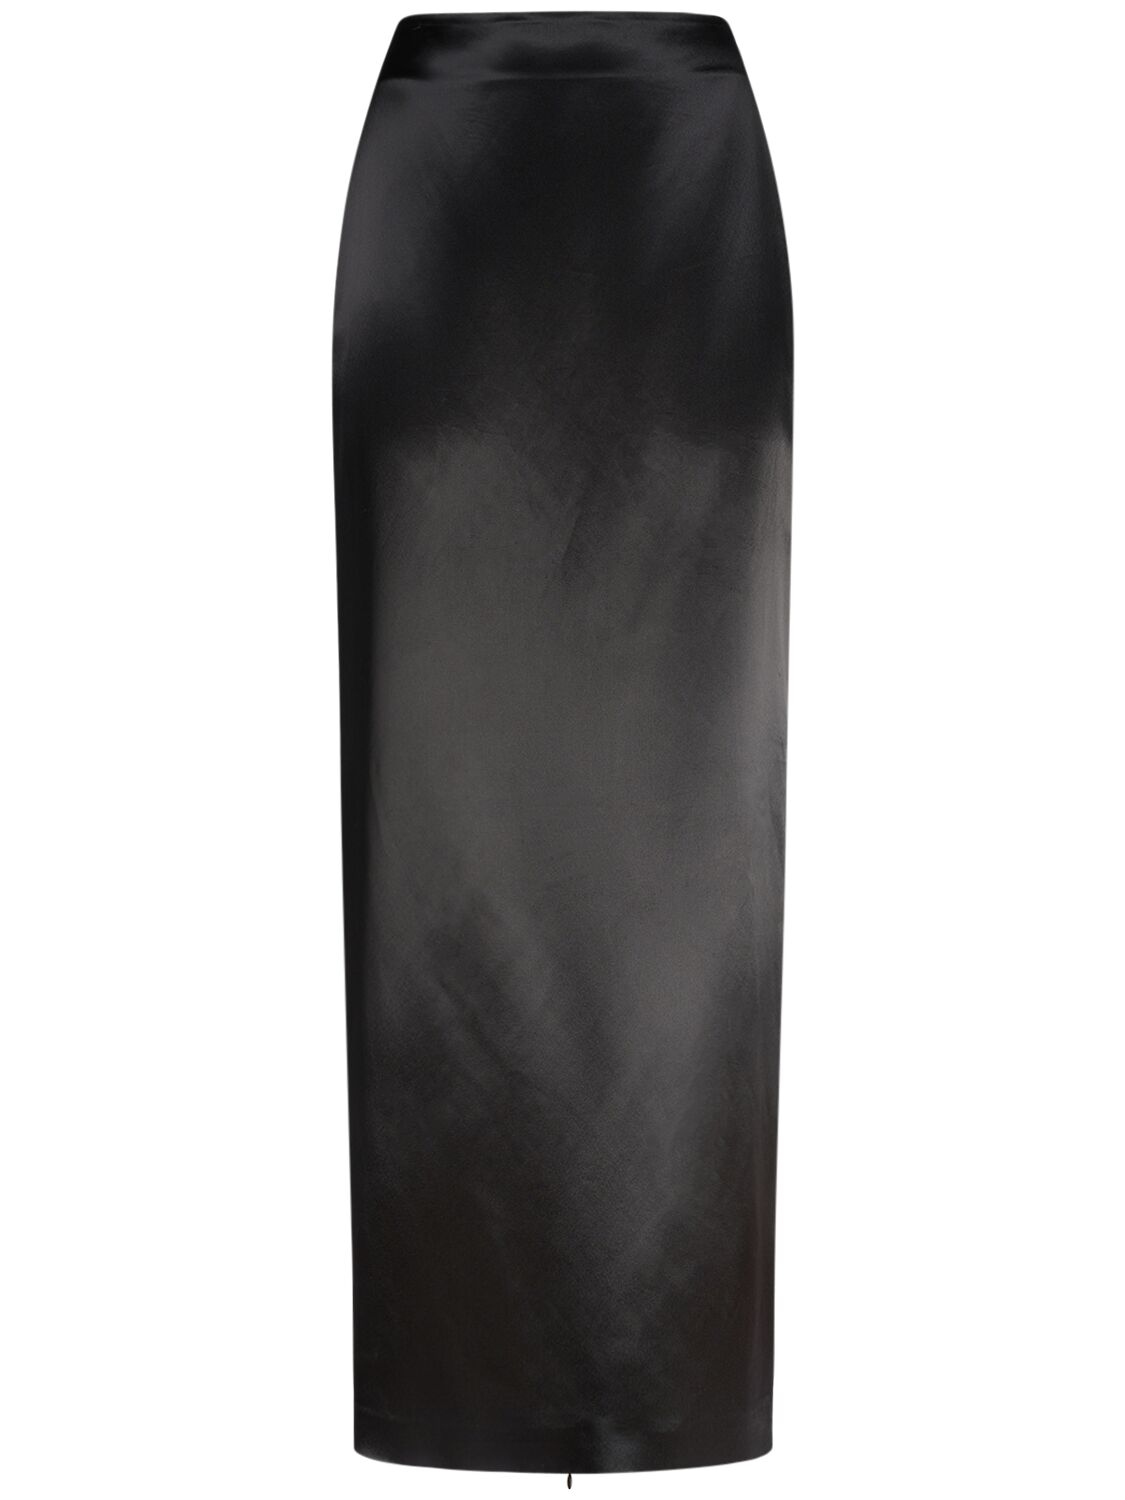 Bartelle Satin Long Skirt